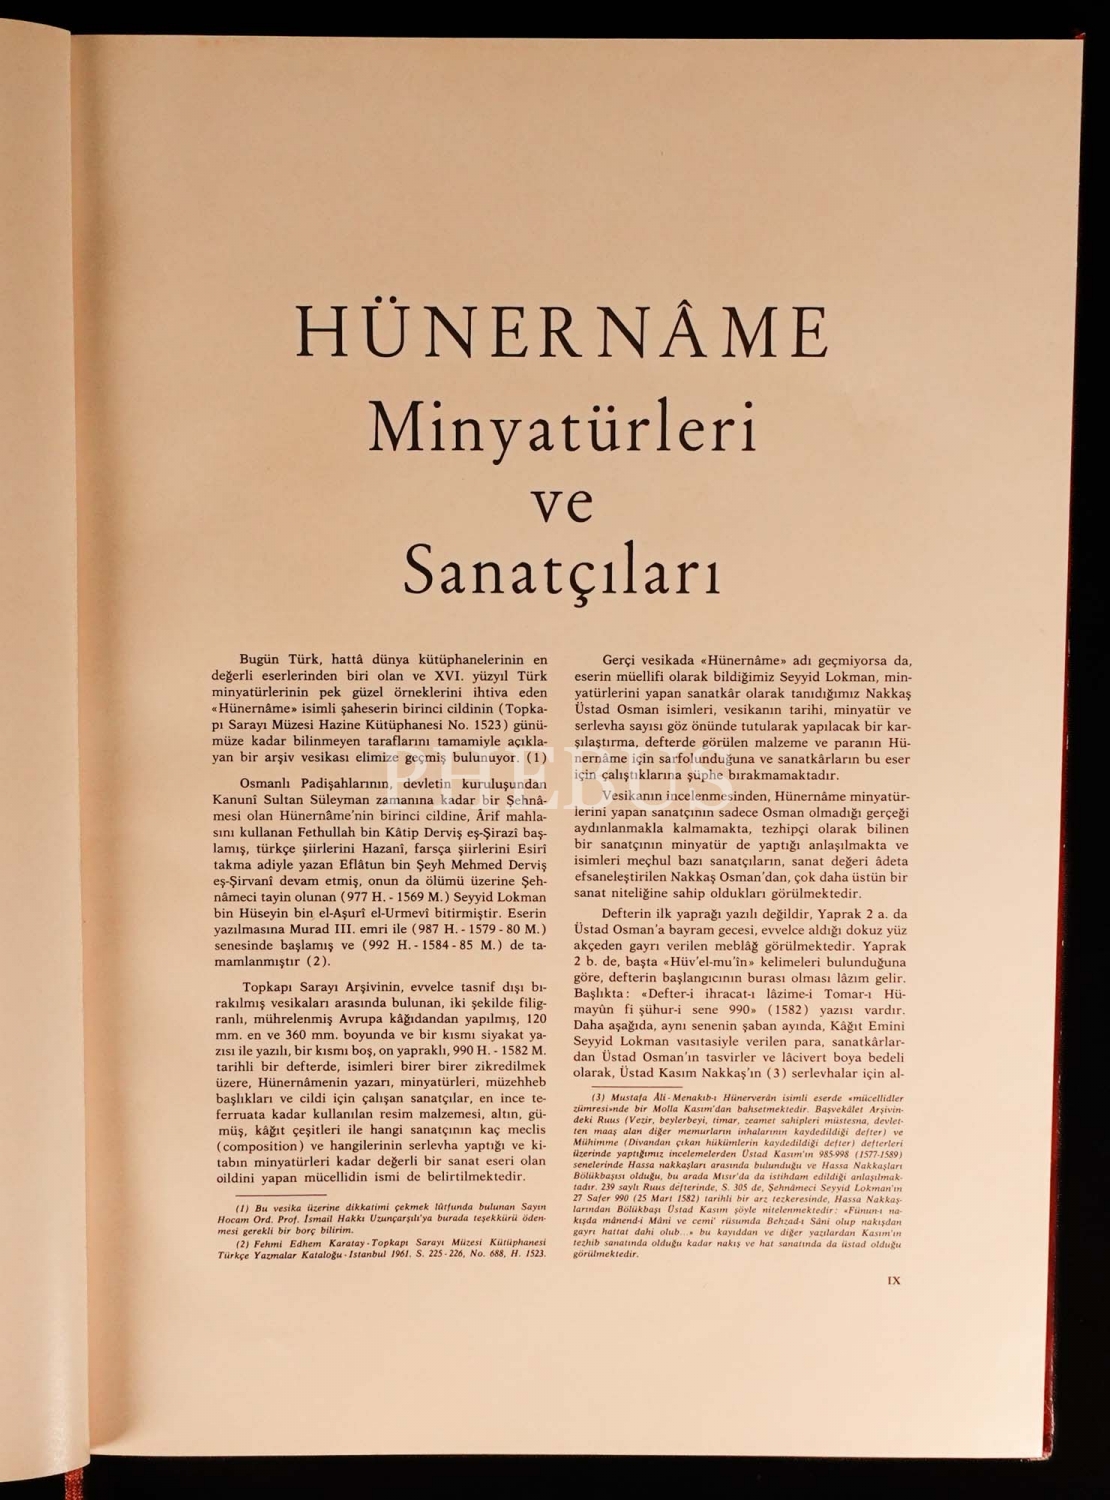 HÜNERNÂME MİNYATÜRLERİ VE SANATÇILARI, 1969, Yapı ve Kredi Bankası, 43 sayfa, 34x47 cm...